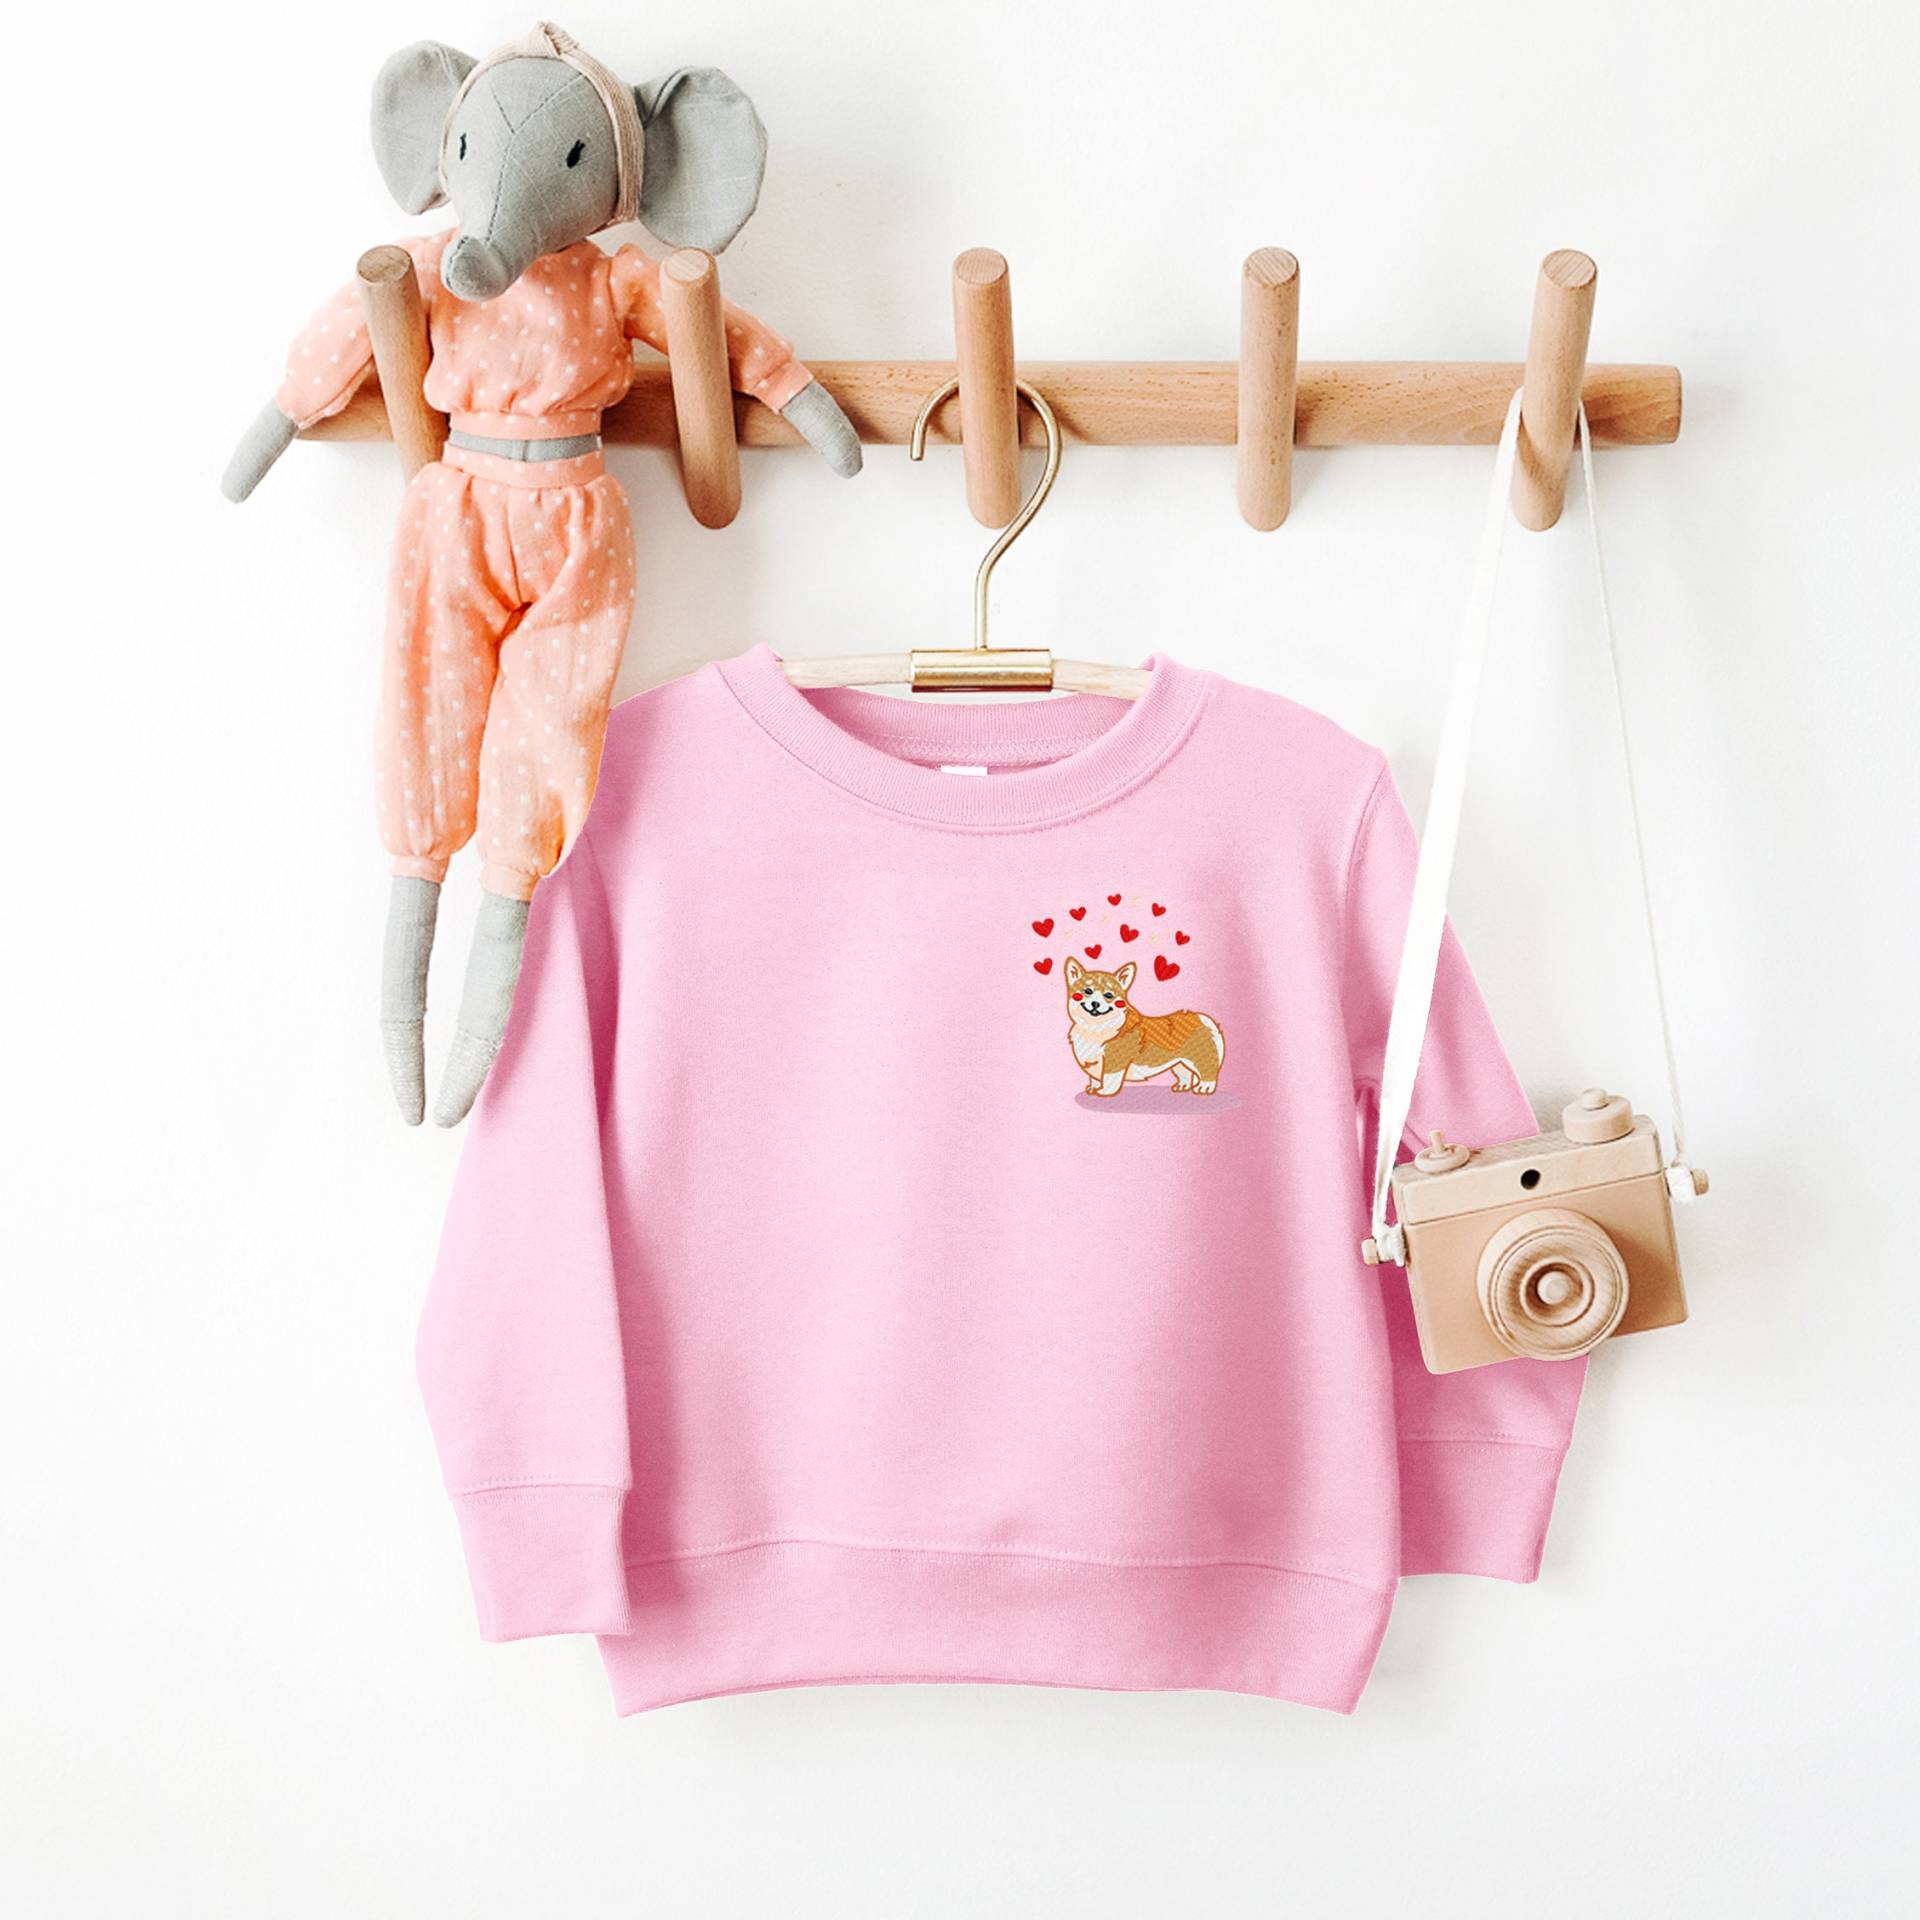 Corgis Sweatshirt Kinder Kleidung Jungen Mädchen Bestickt Geburtstagsgeschenk von LoveulotsGifts